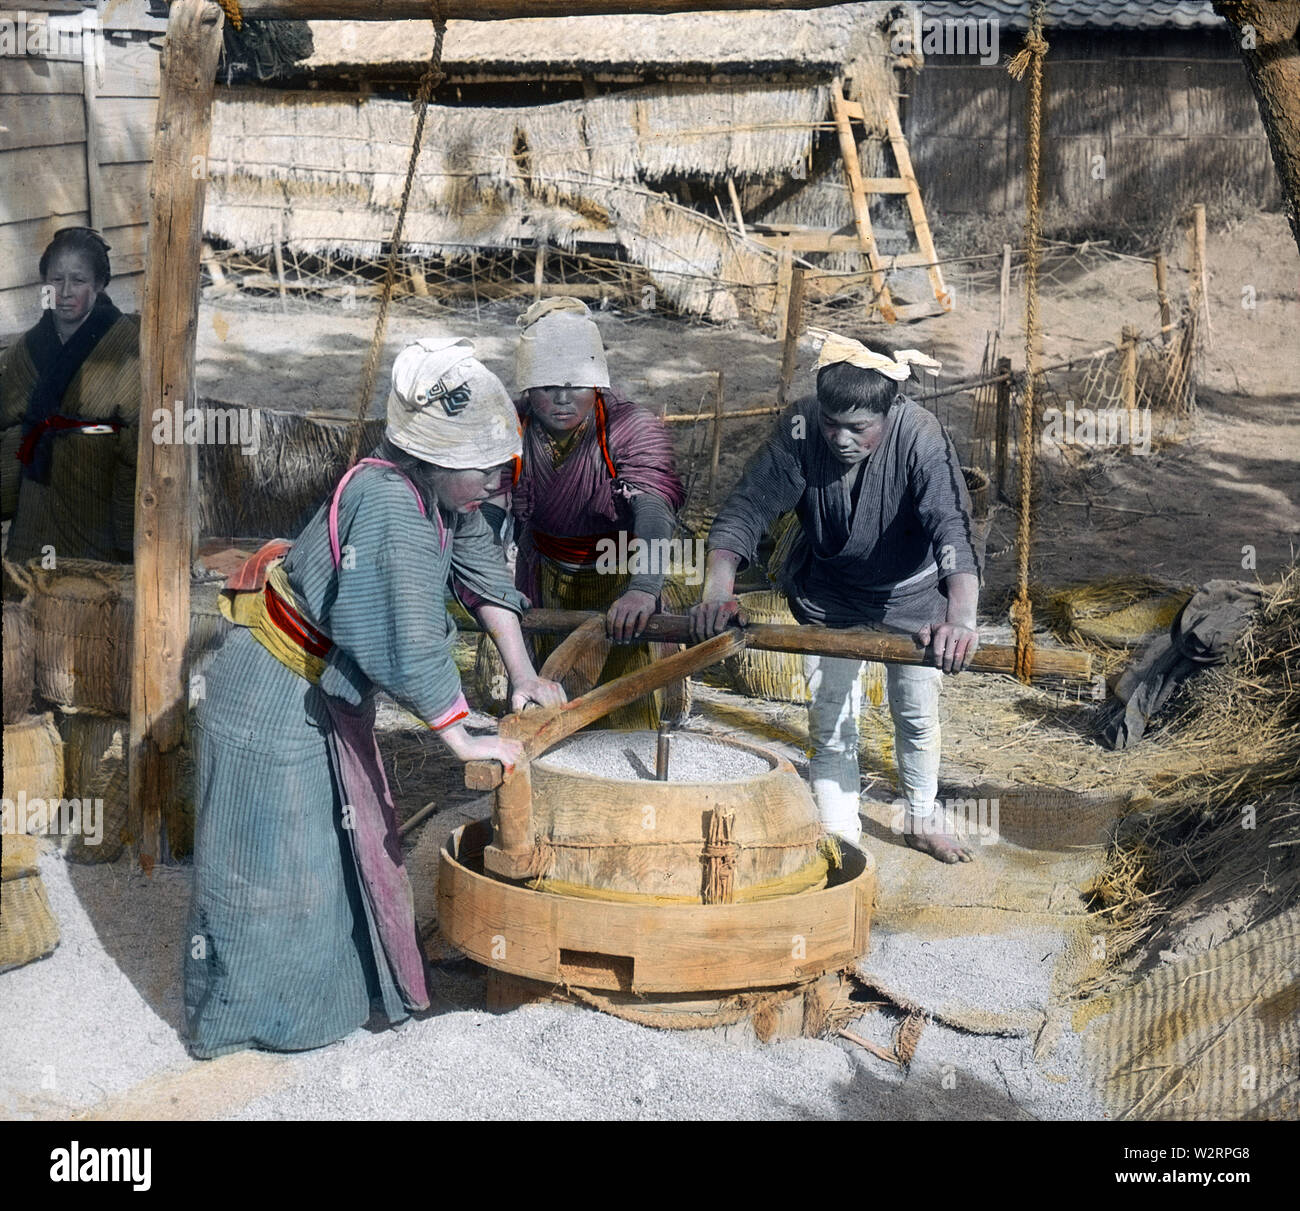 [1890s Japan - Japanische Bauern schälen Reis] - Drei Landwirte sind schälen Reis in einem traditionellen Mühle aus dem 19. Jahrhundert vintage Glas schieben. Stockfoto